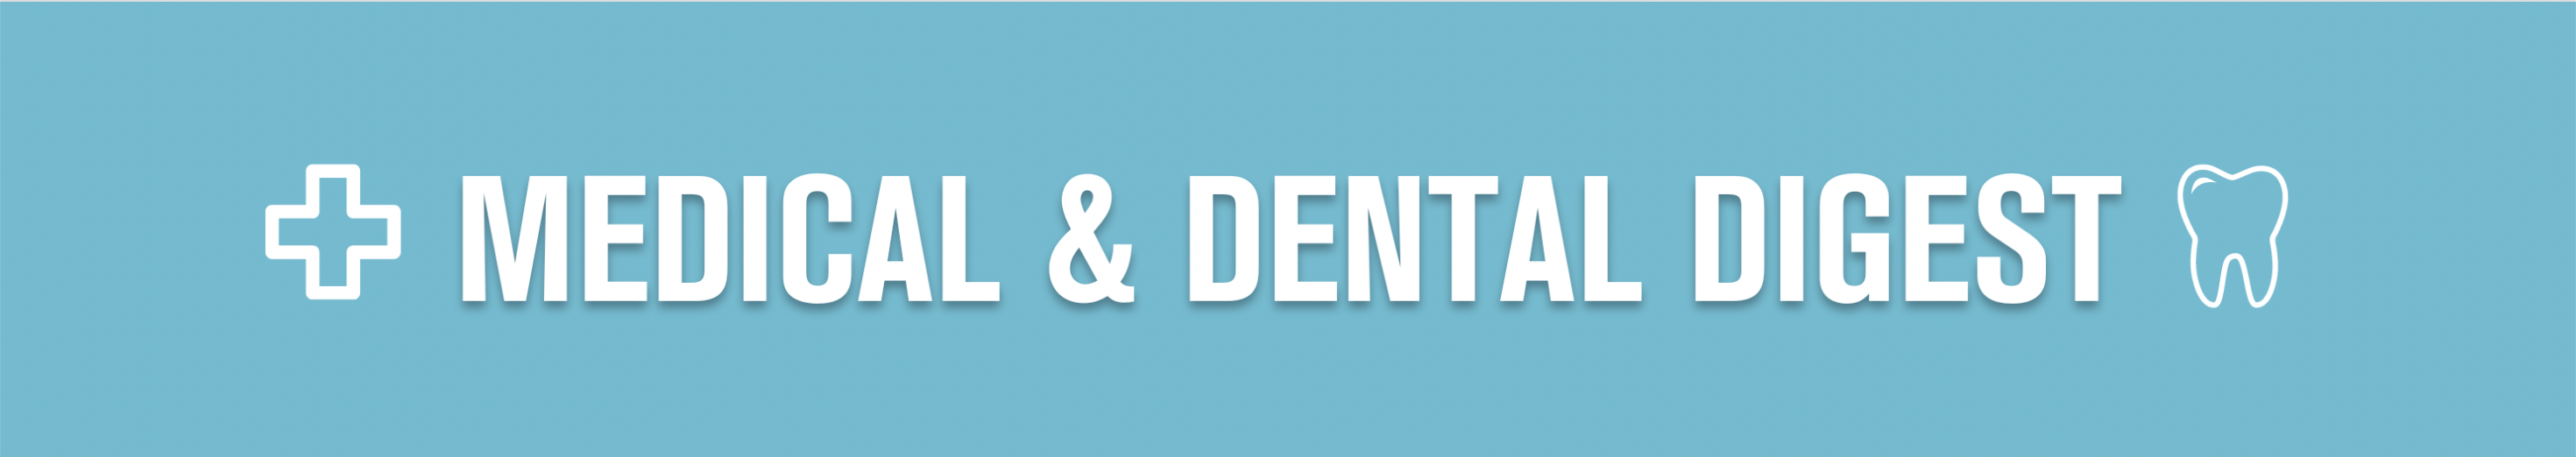 Medical & Dental Digest